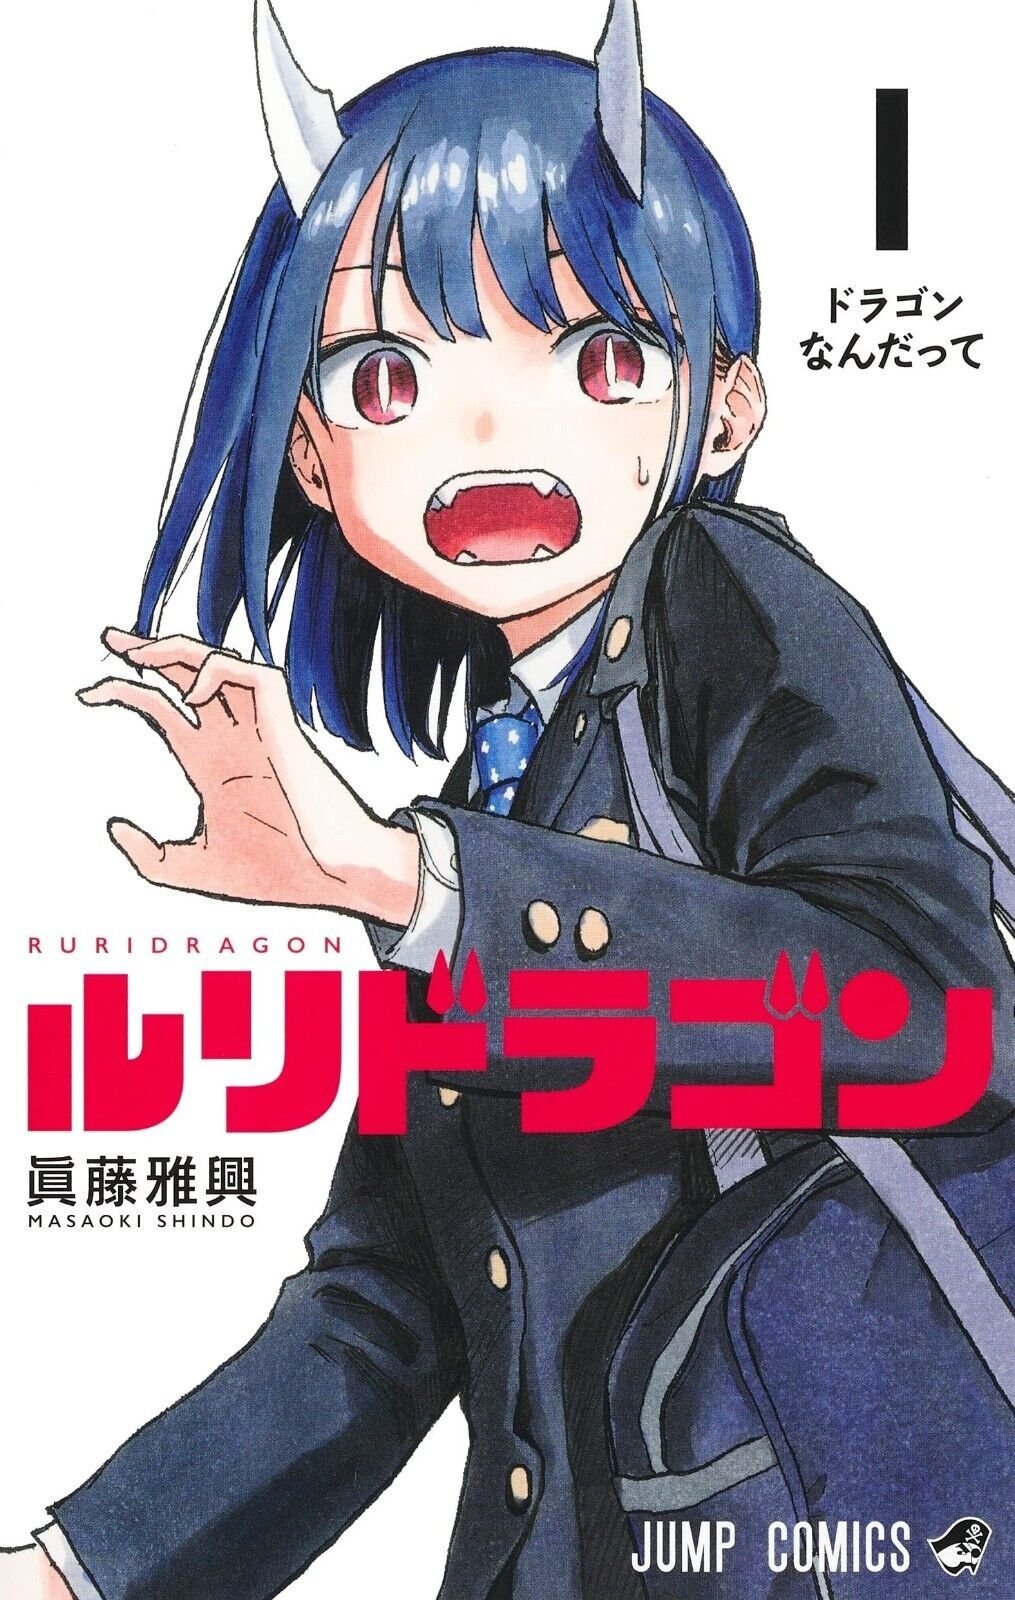 ART] Sono Bisque Doll wa Koi wo Suru Volume 11 Extras : r/manga